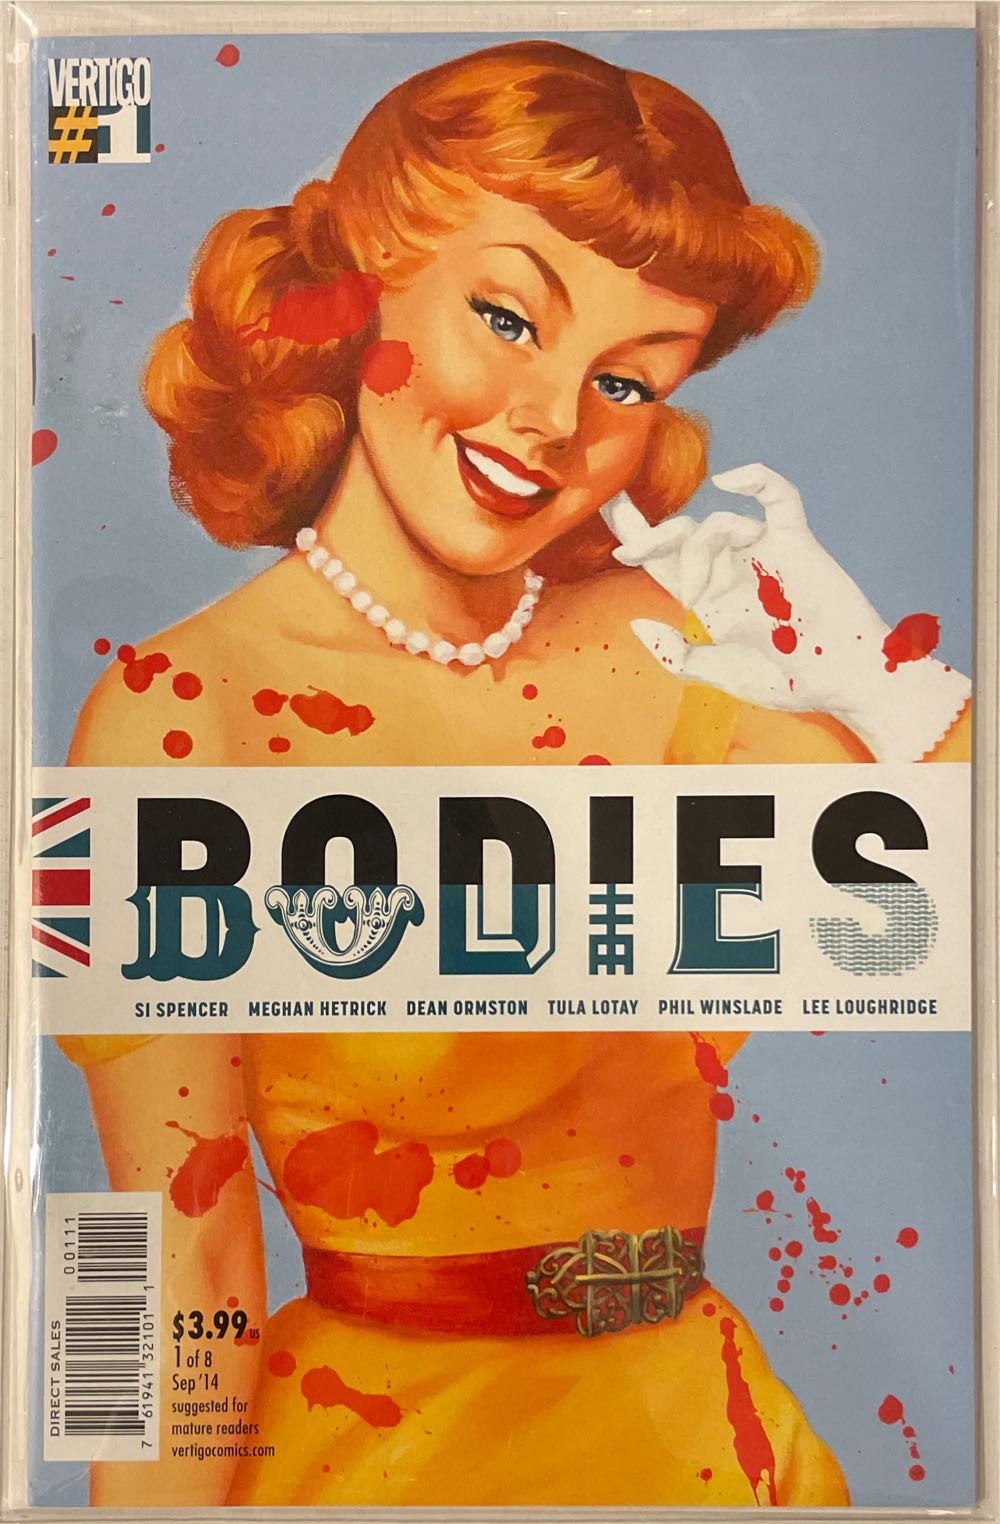 Bodies - Vertigo (1 - Sep 2014) comic book collectible [Barcode 76194132101100111] - Main Image 1